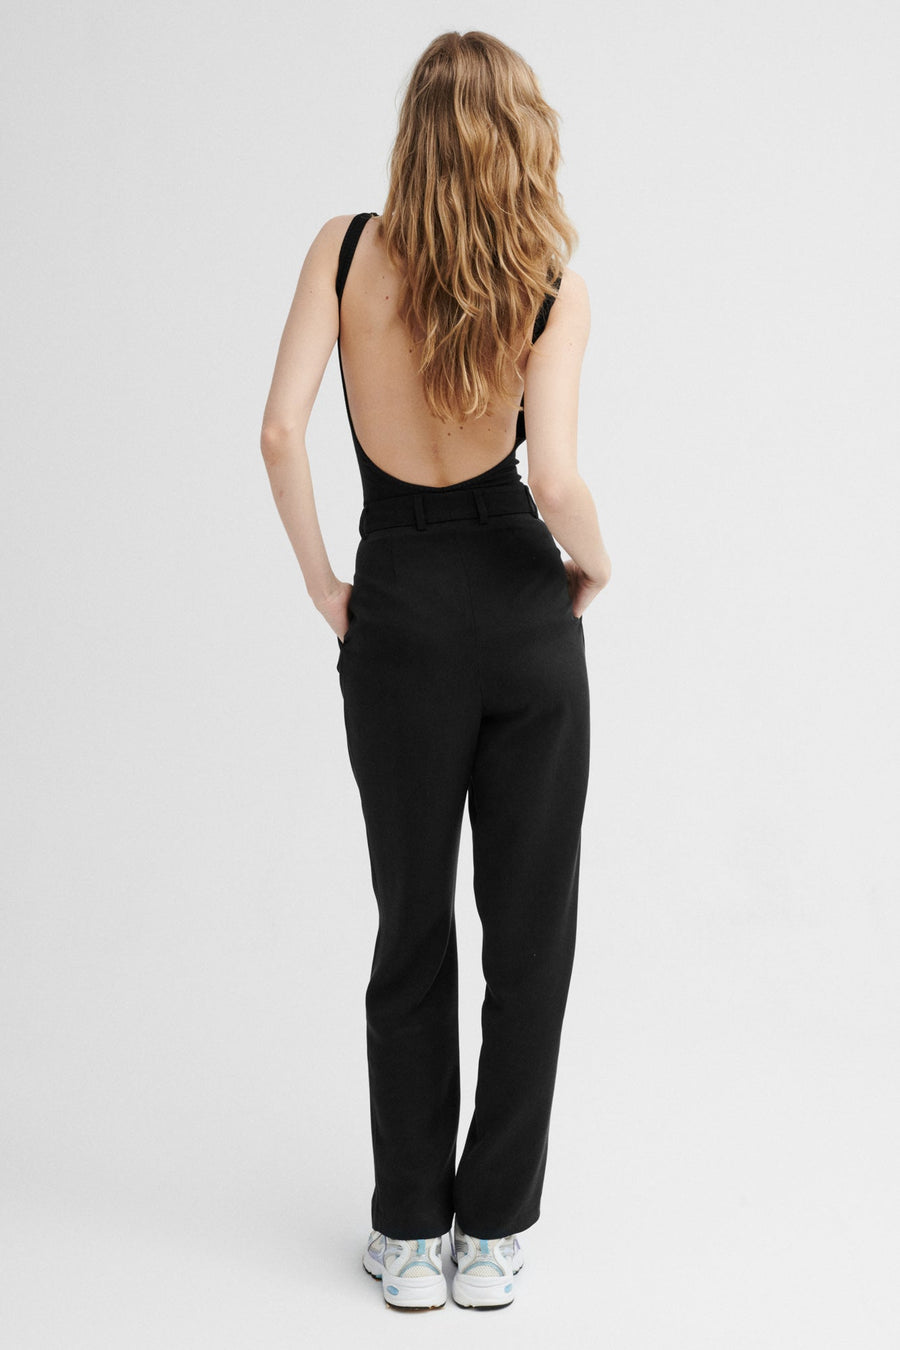 Body z bawełny organicznej / 01 / 36 / onyx black *spodnie-z-tencelu-05-17-onyx-black* ?Modelka ma 179 cm wzrostu i prezentuje rozmiar S?